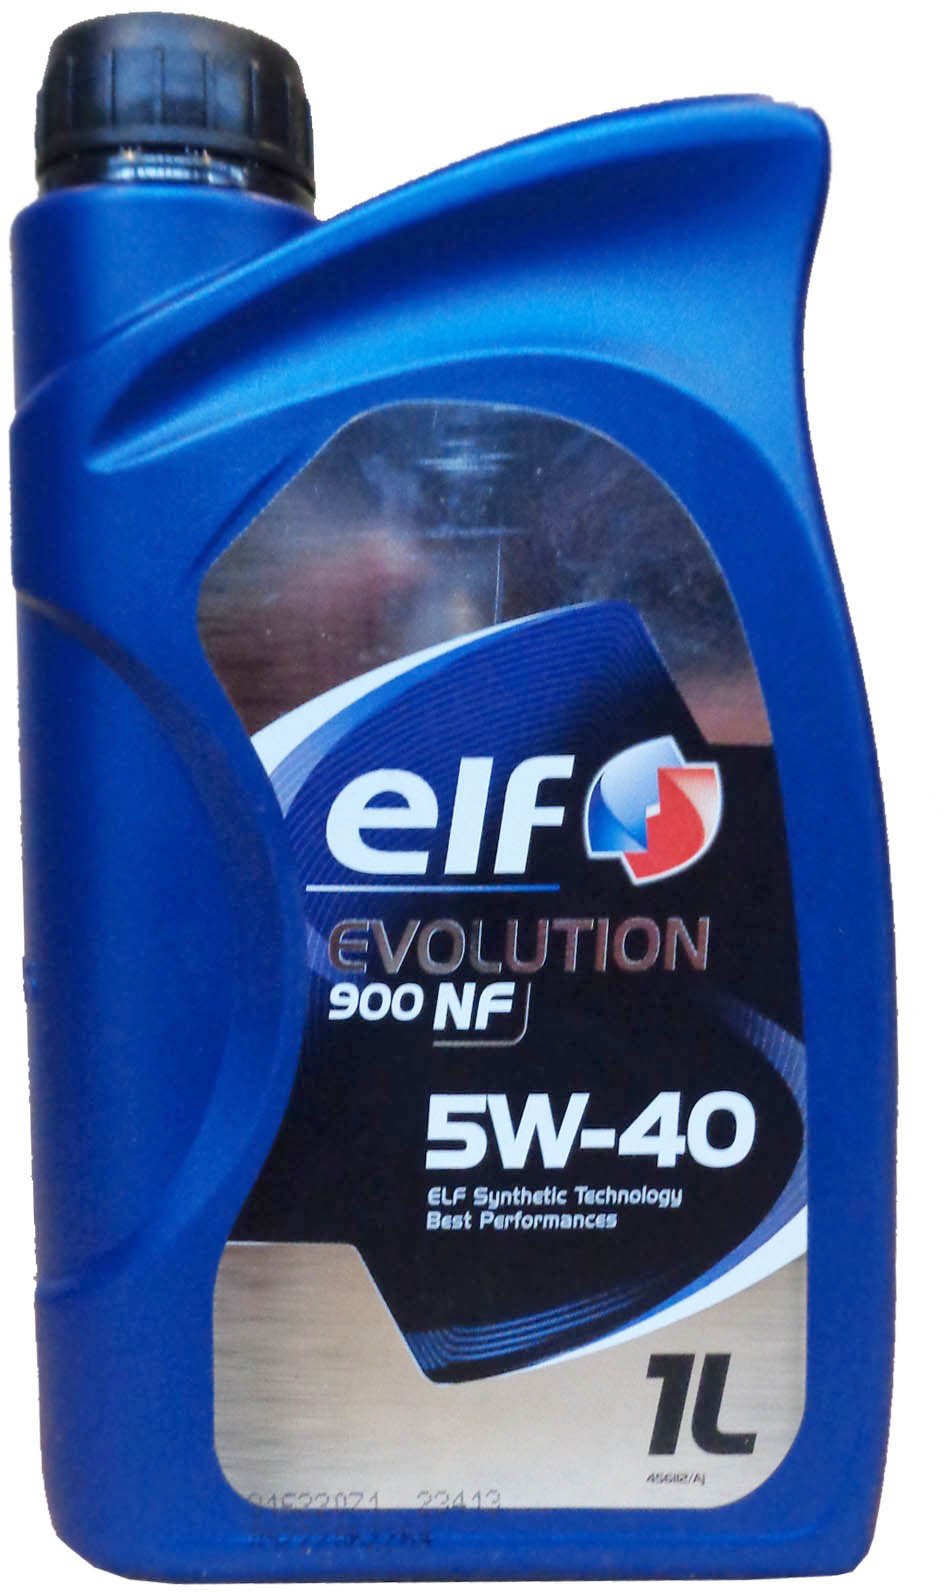 Elf Evolution 900 NF 5w-40